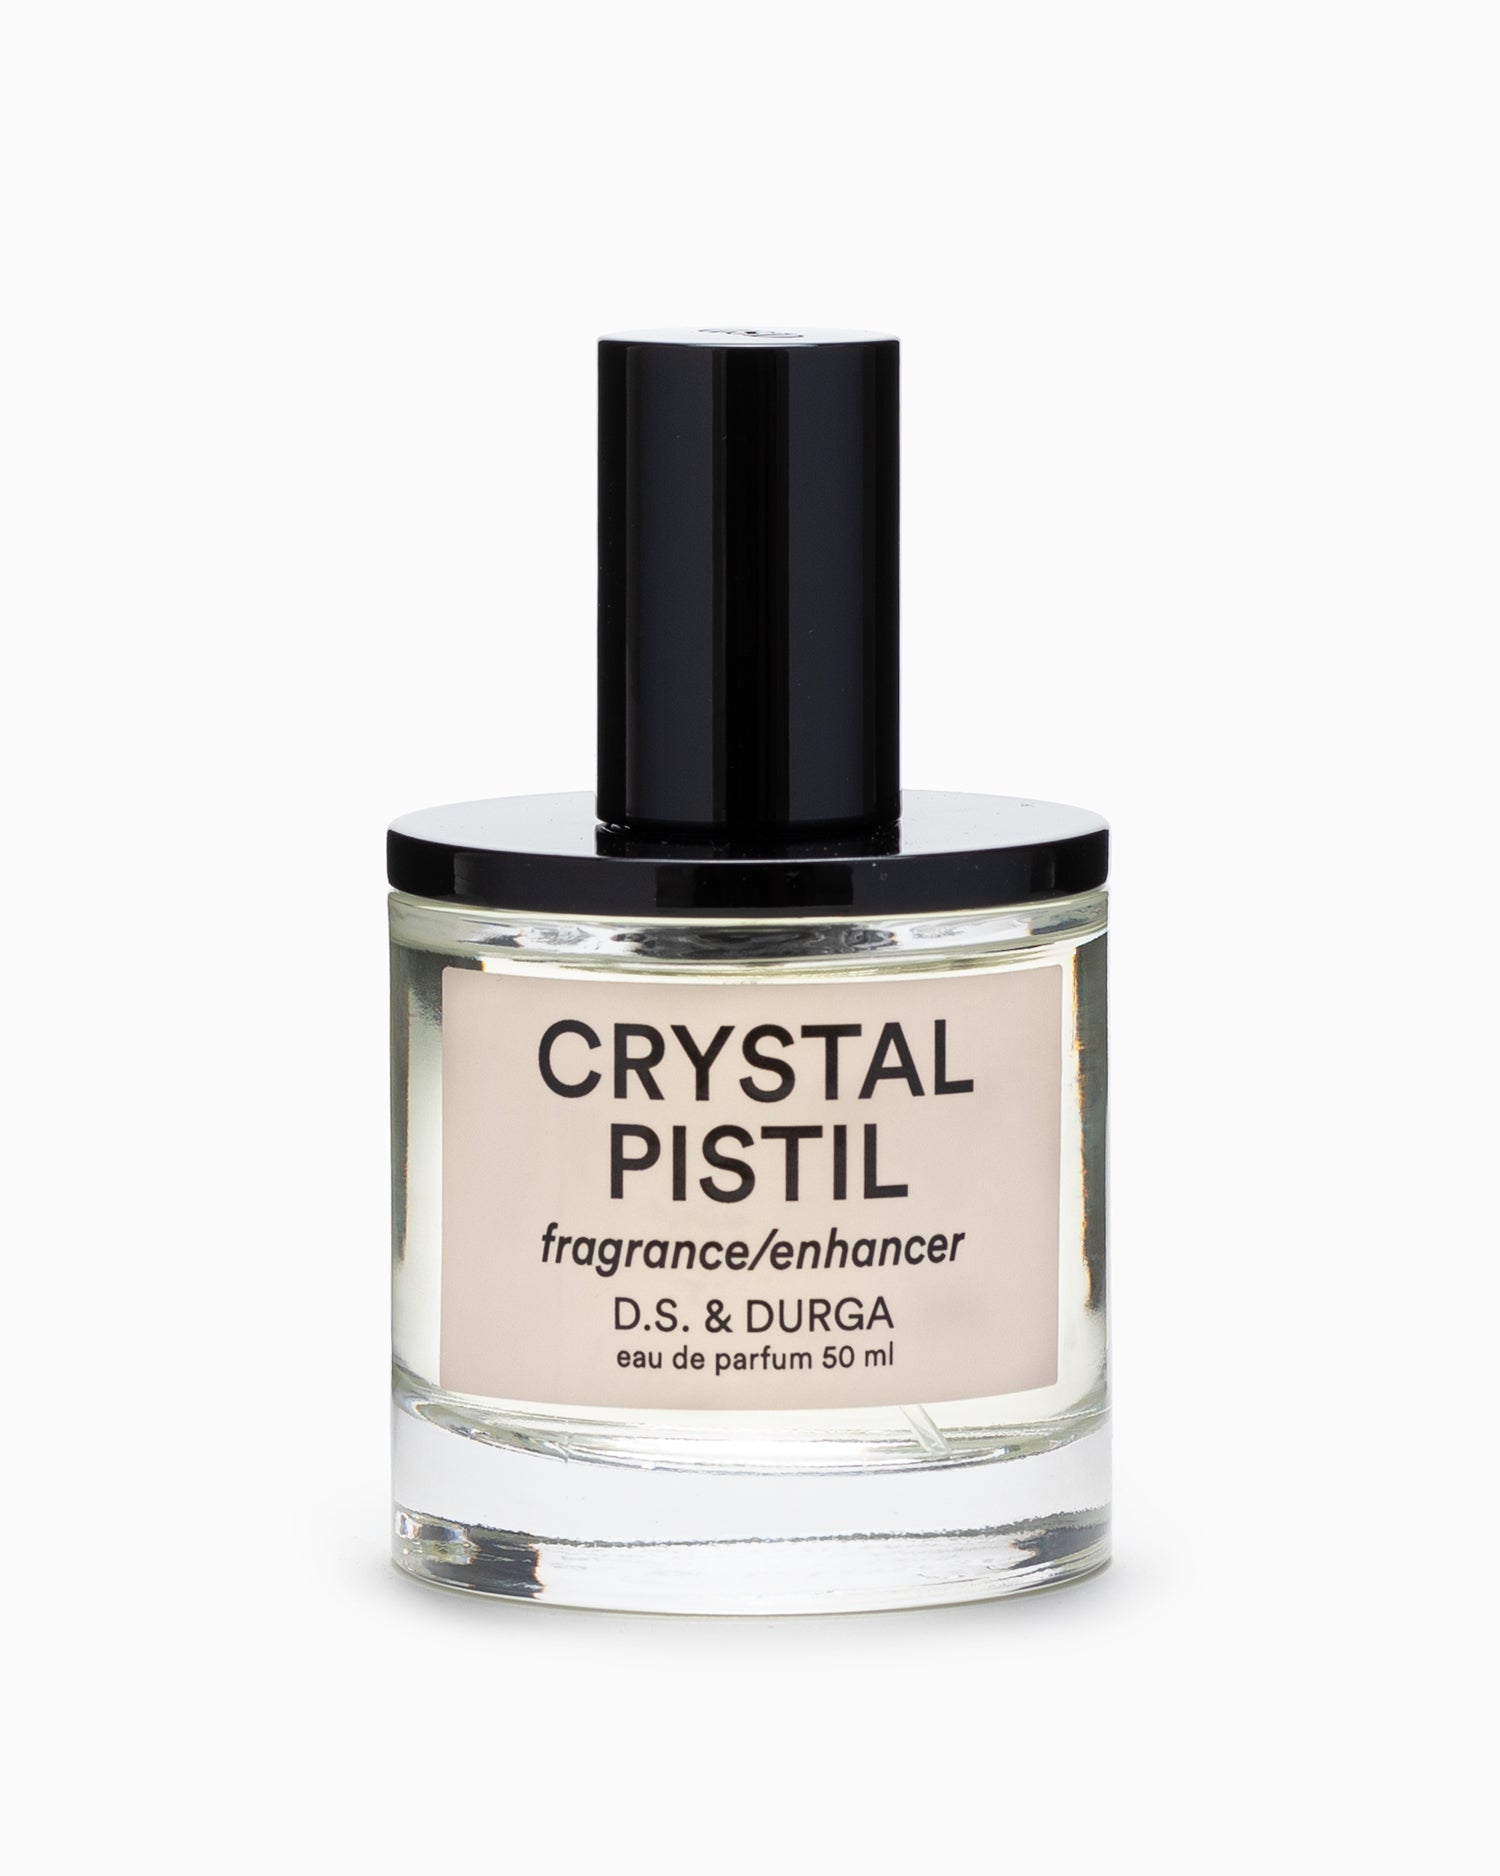 Crystal Pistil 50ml - D.S. & Durga